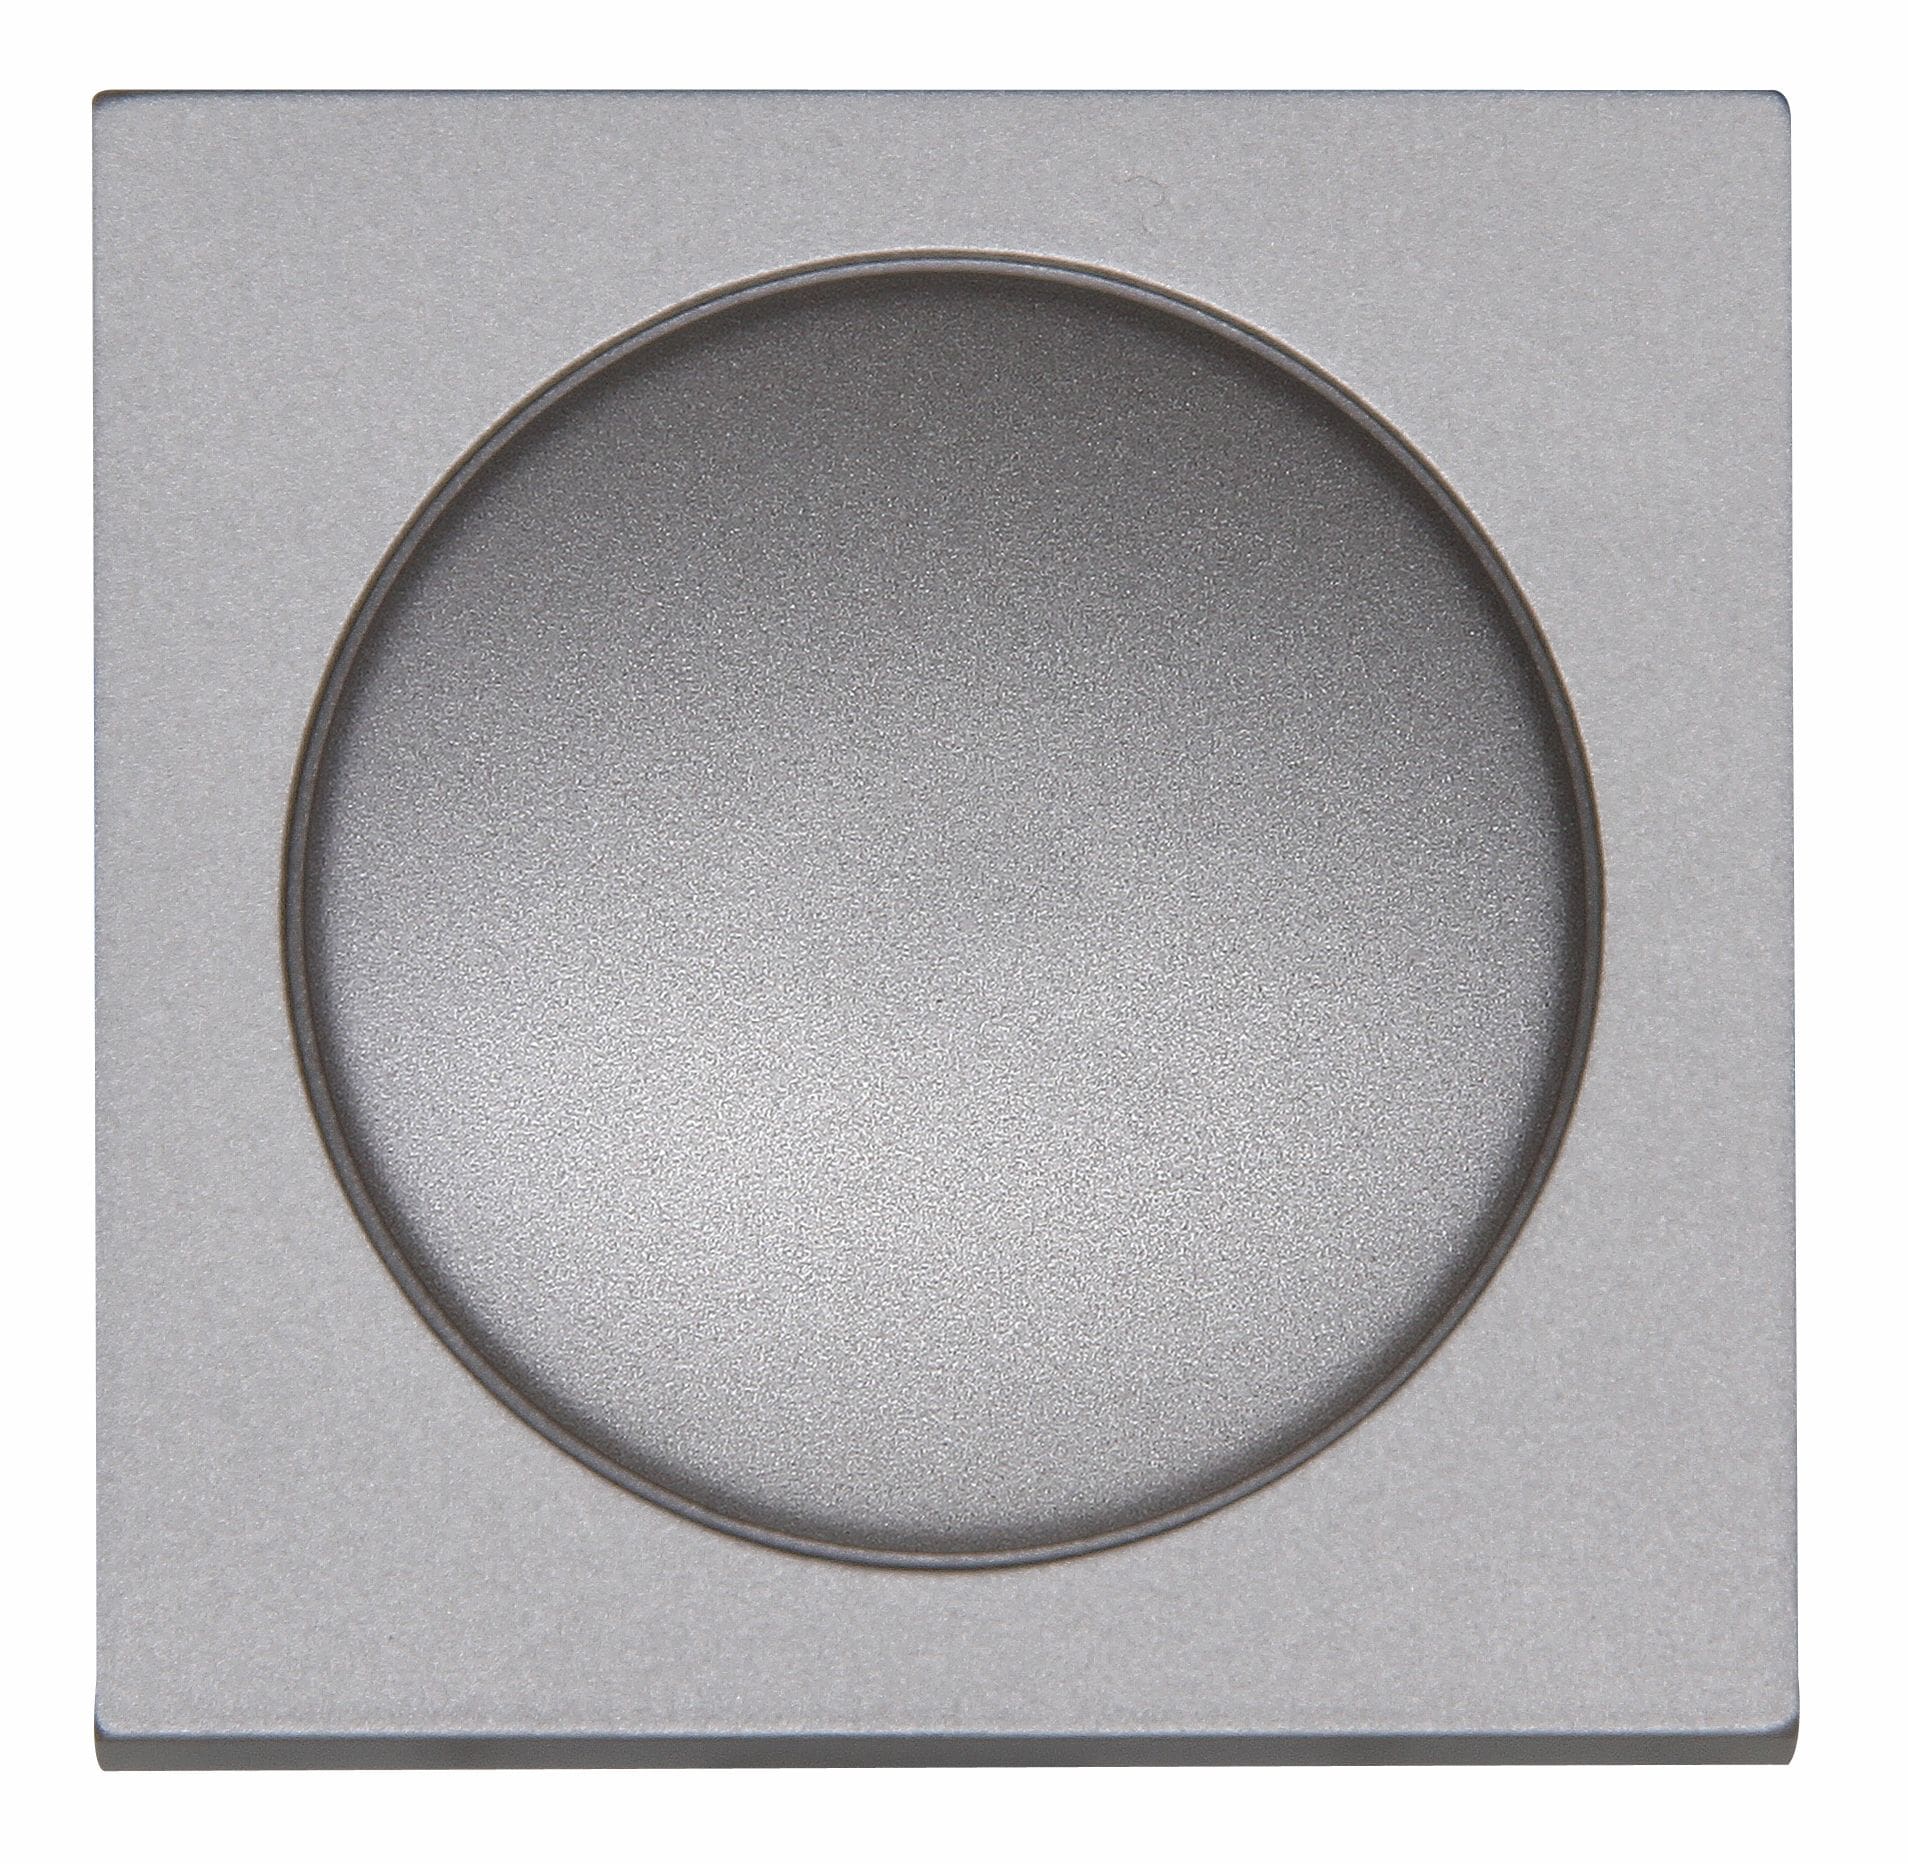 Kopp 490647008 HK07 - Dimmer-Abdeckung für Druck-Wechseldimmer, Farbe: stahl